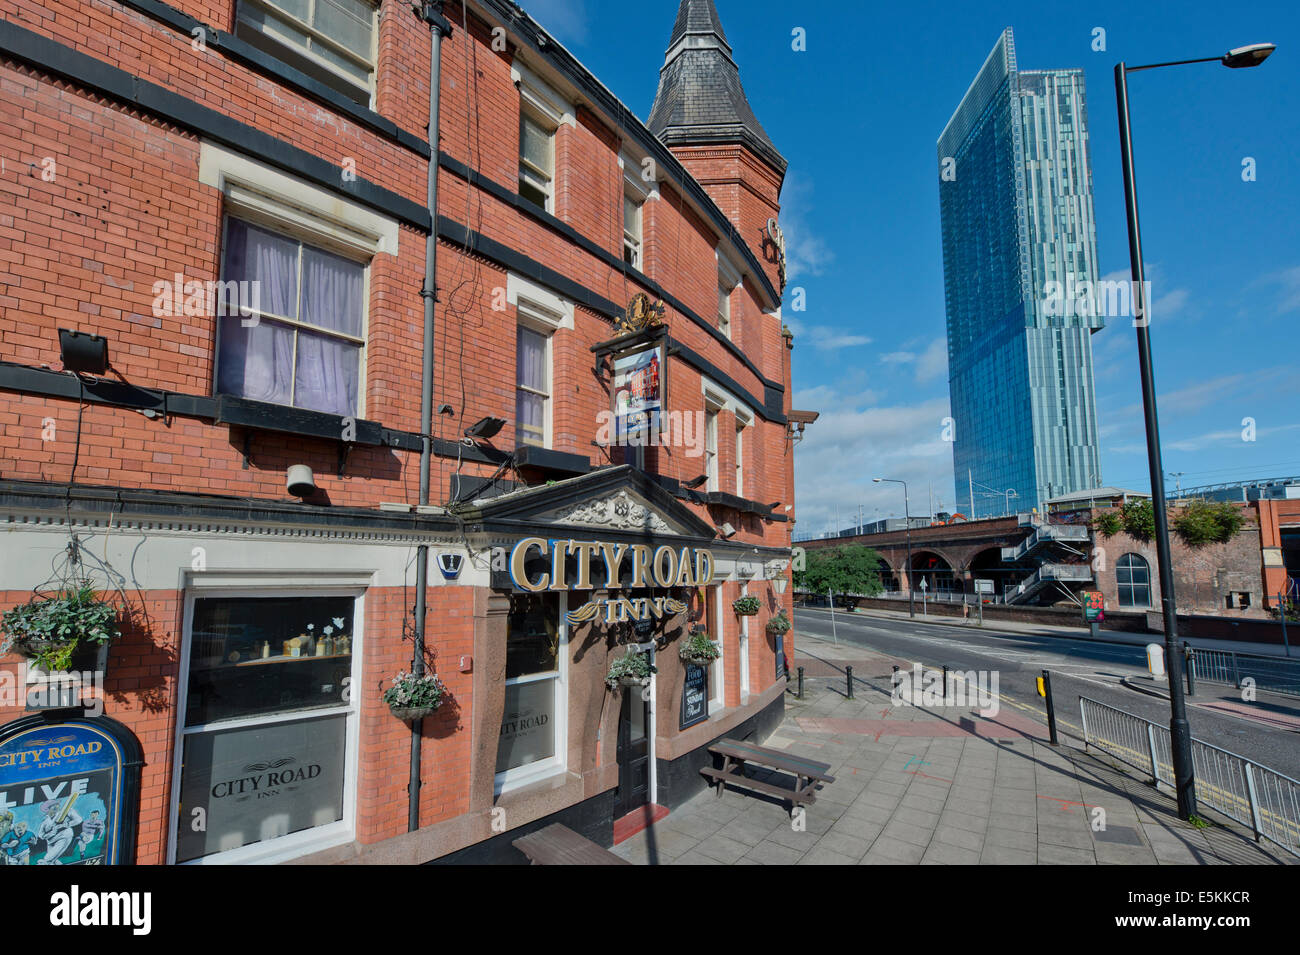 Der City Road Inn traditionellen englischen Stadt Pub, befindet sich auf Albion Street, Manchester, UK. Stockfoto